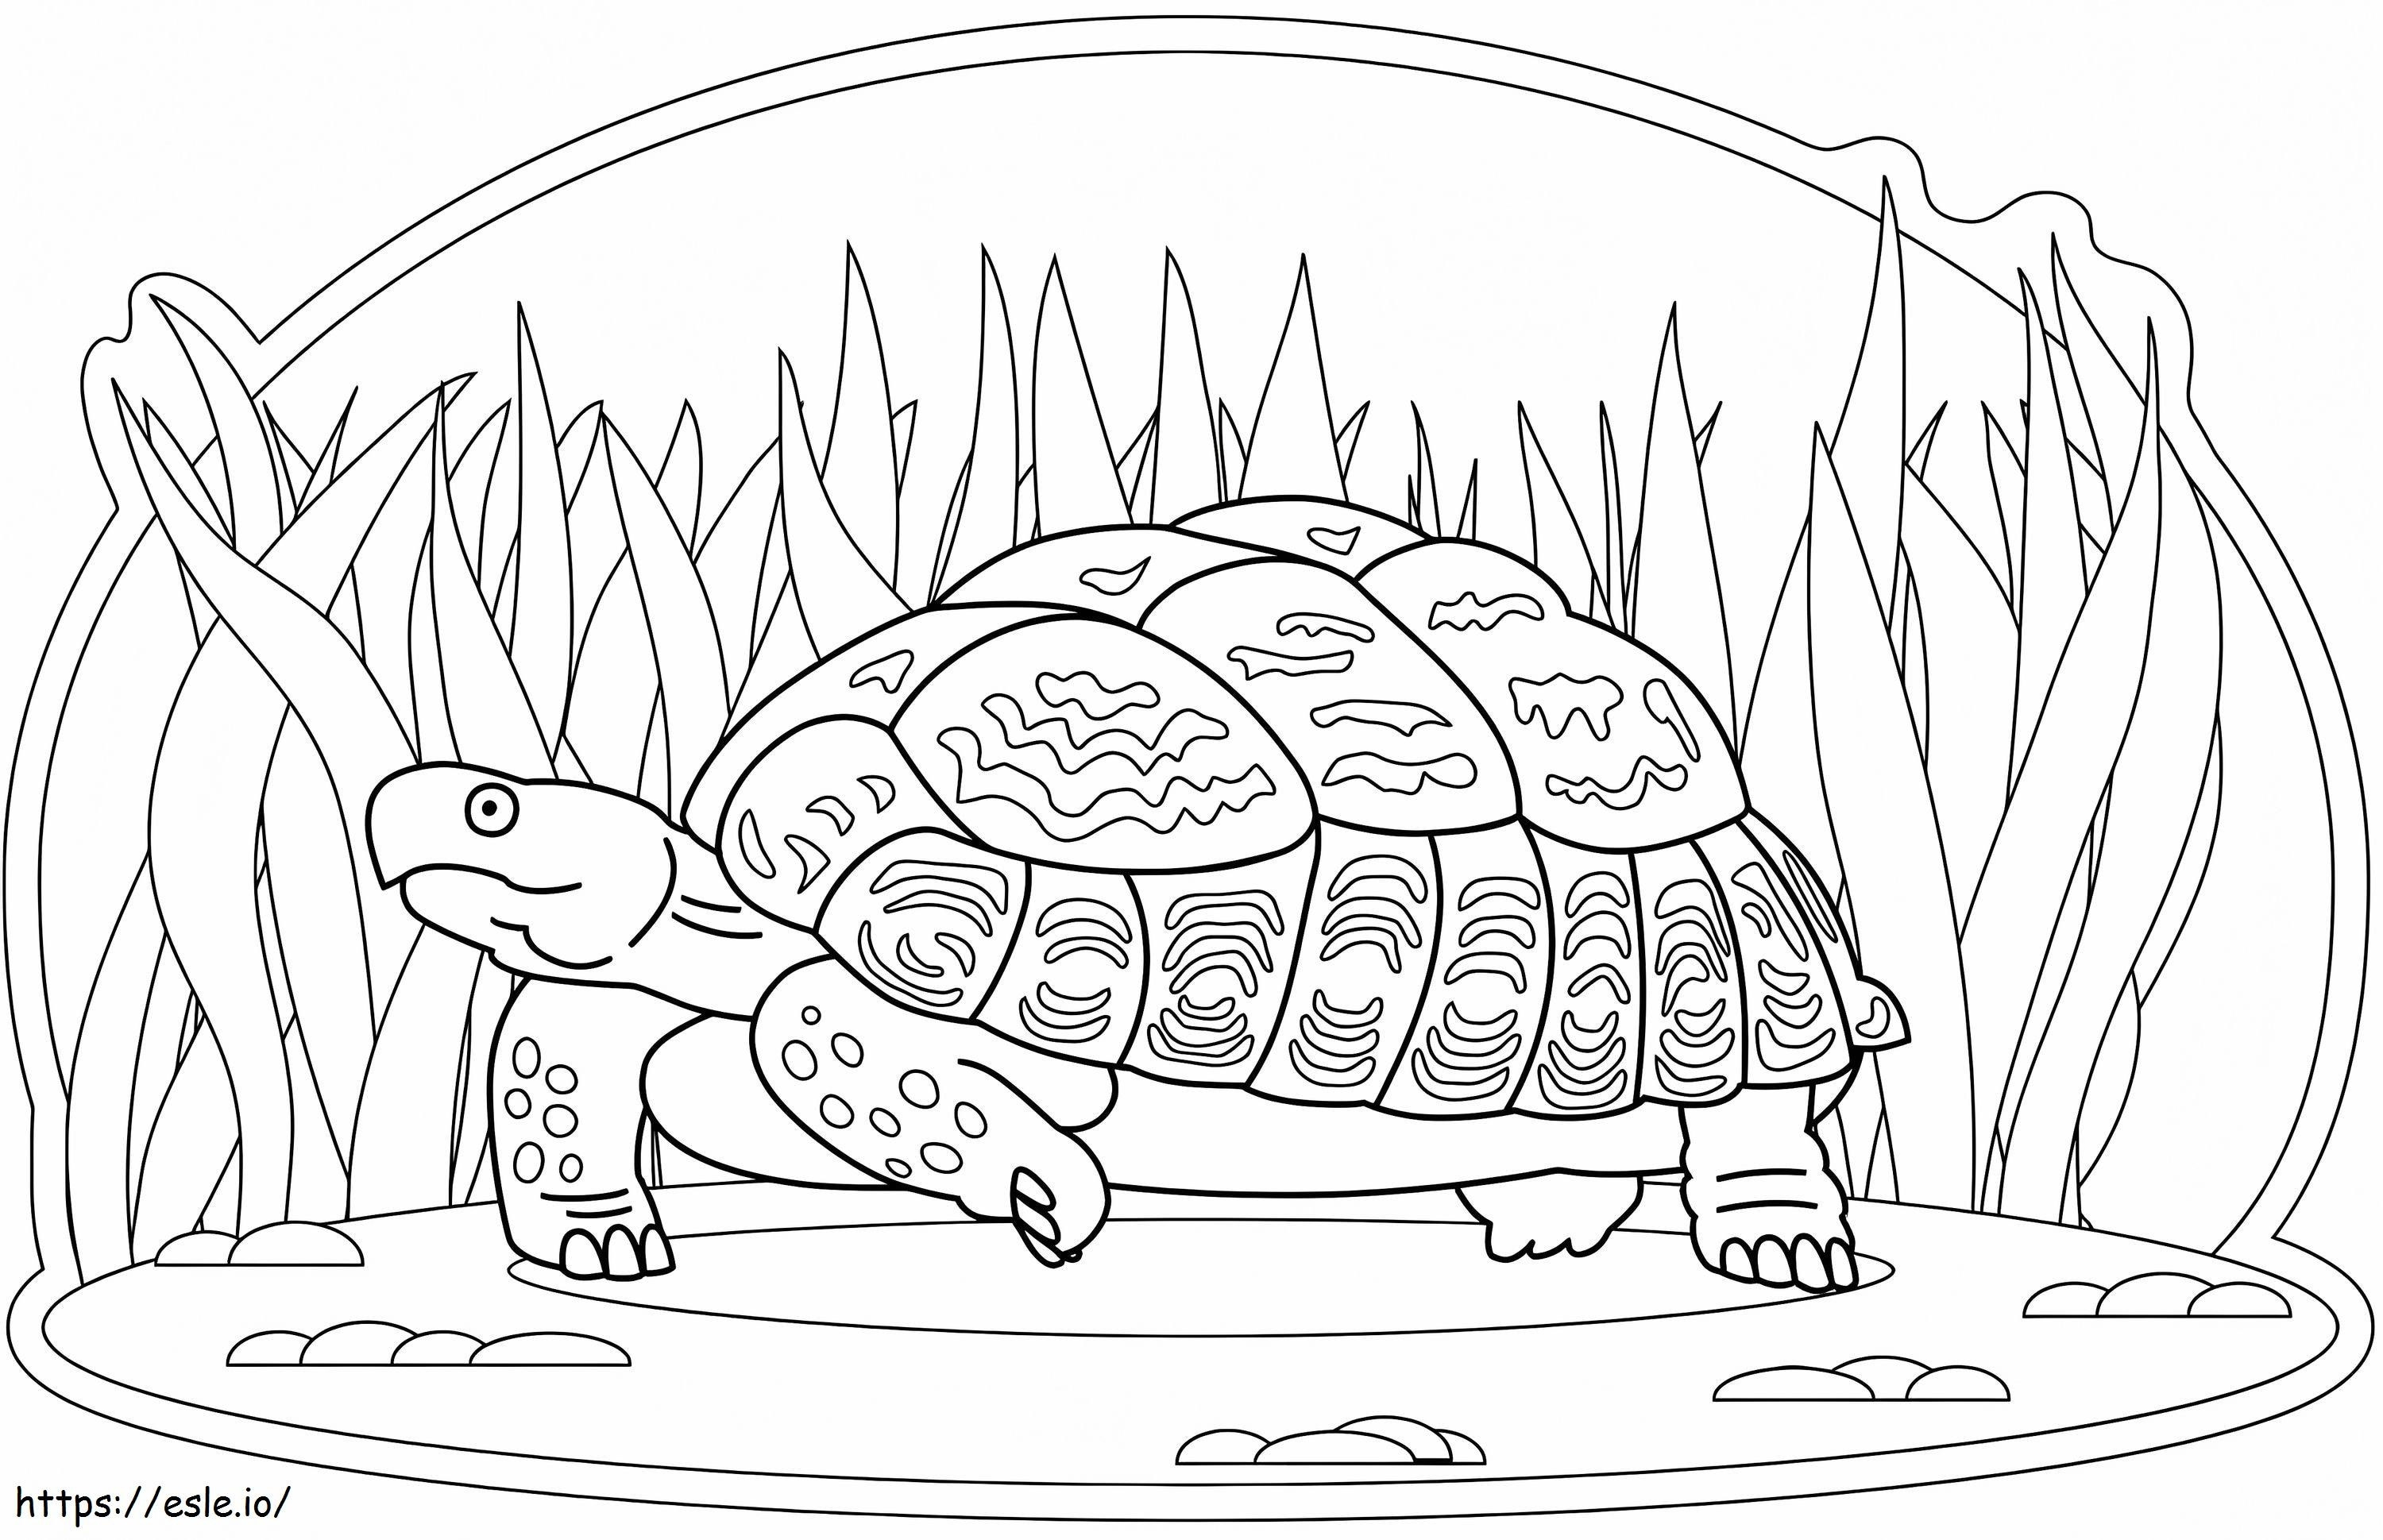 Coloriage Promenades de tortues à imprimer dessin